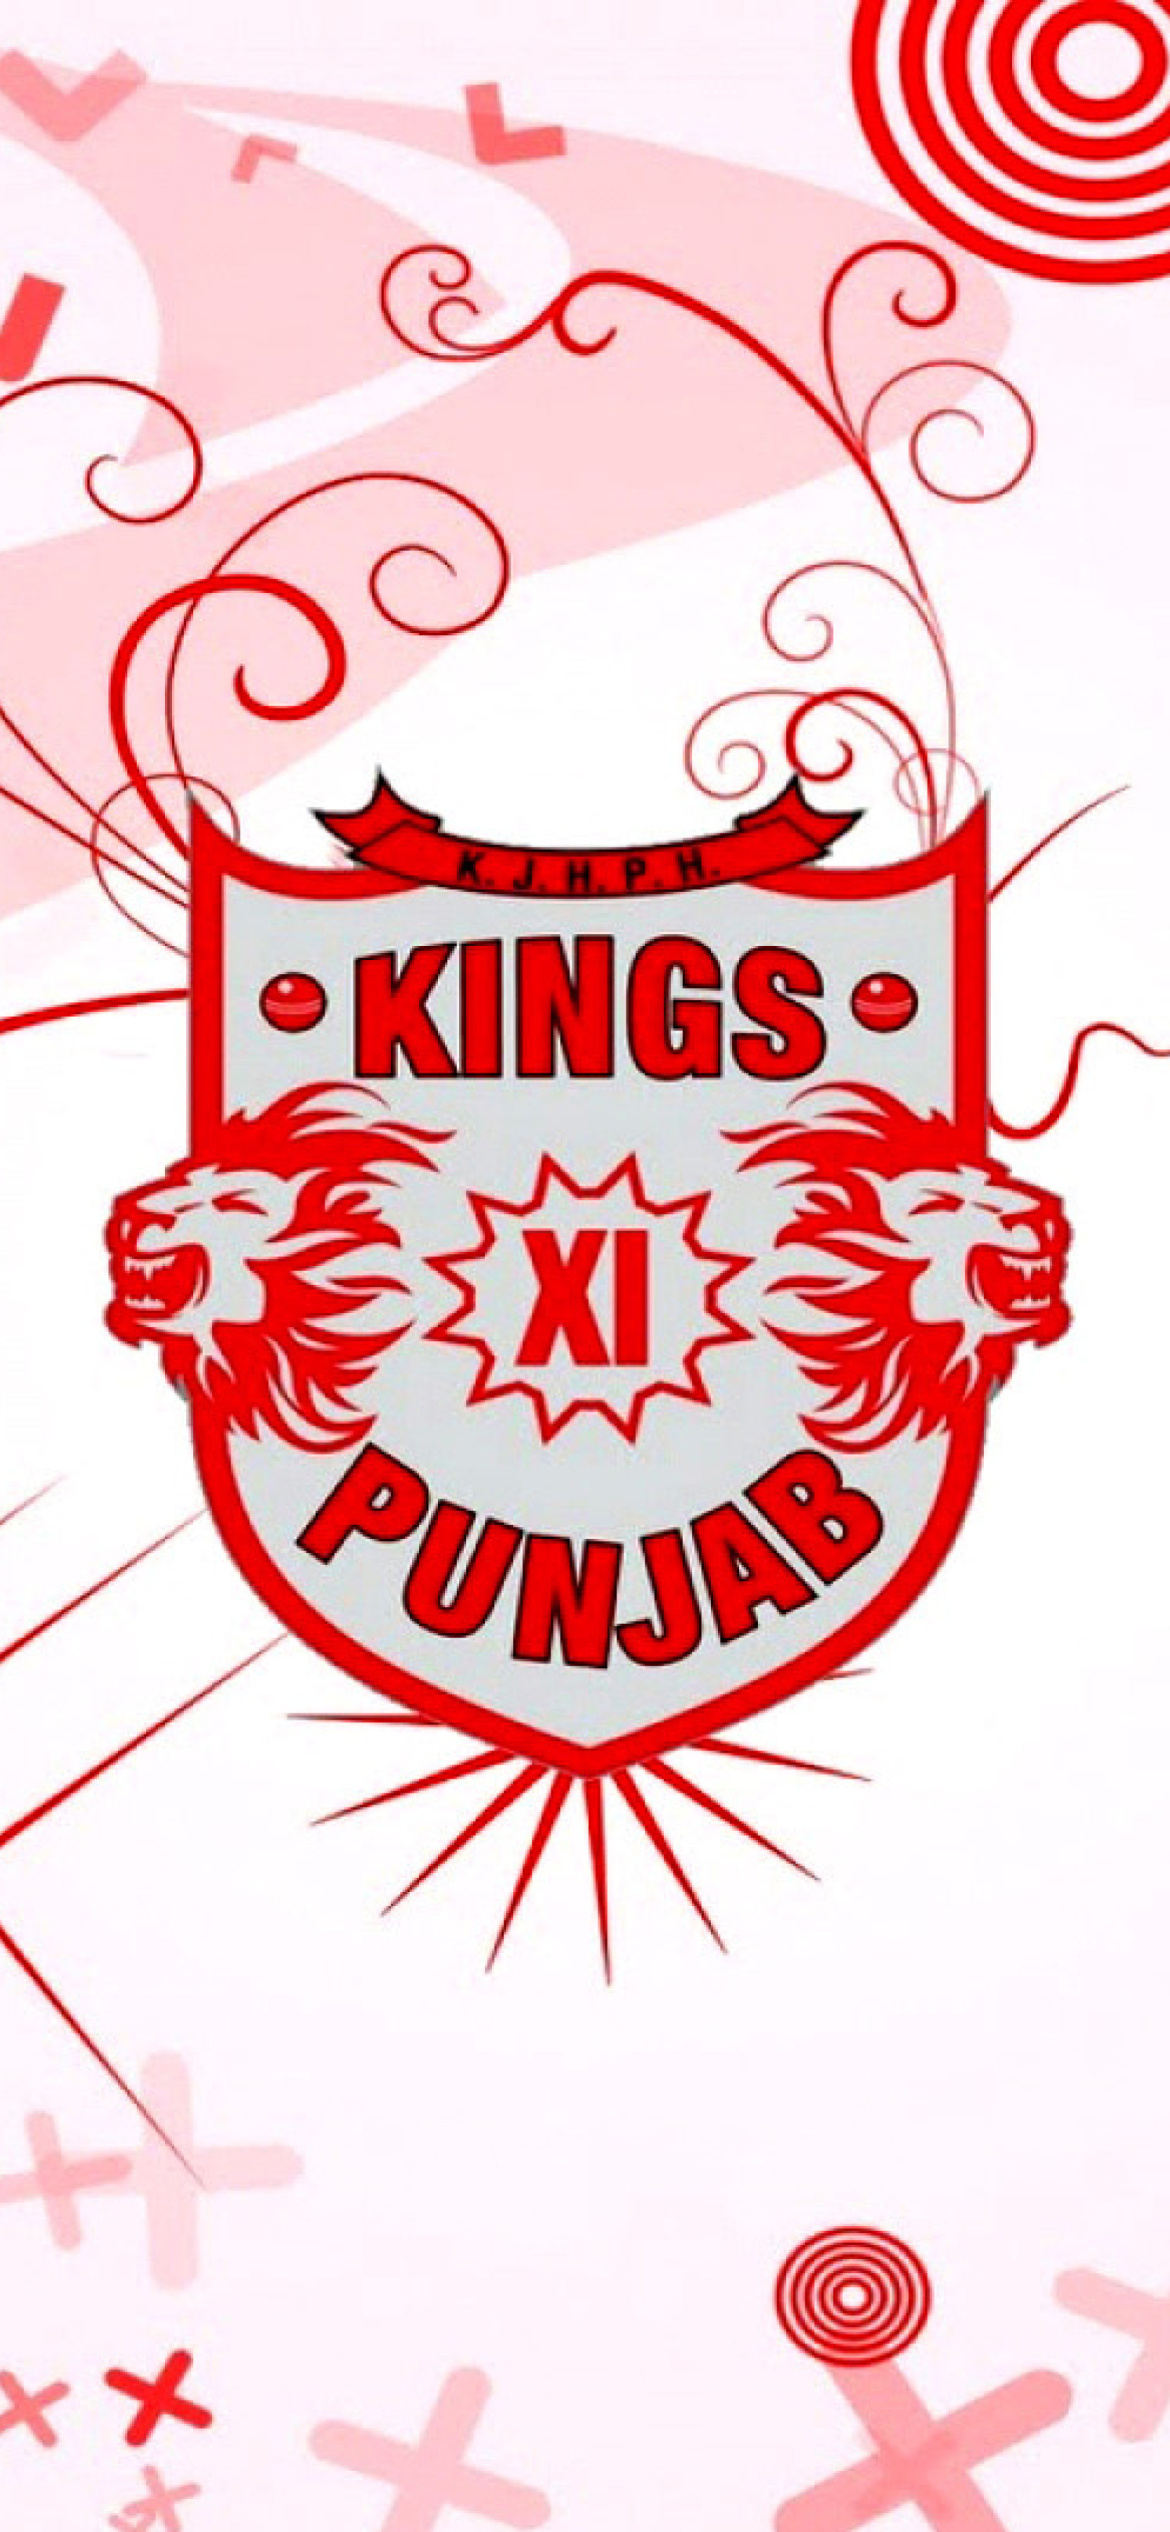 Fondo de pantalla Kings Xi Punjab 1170x2532